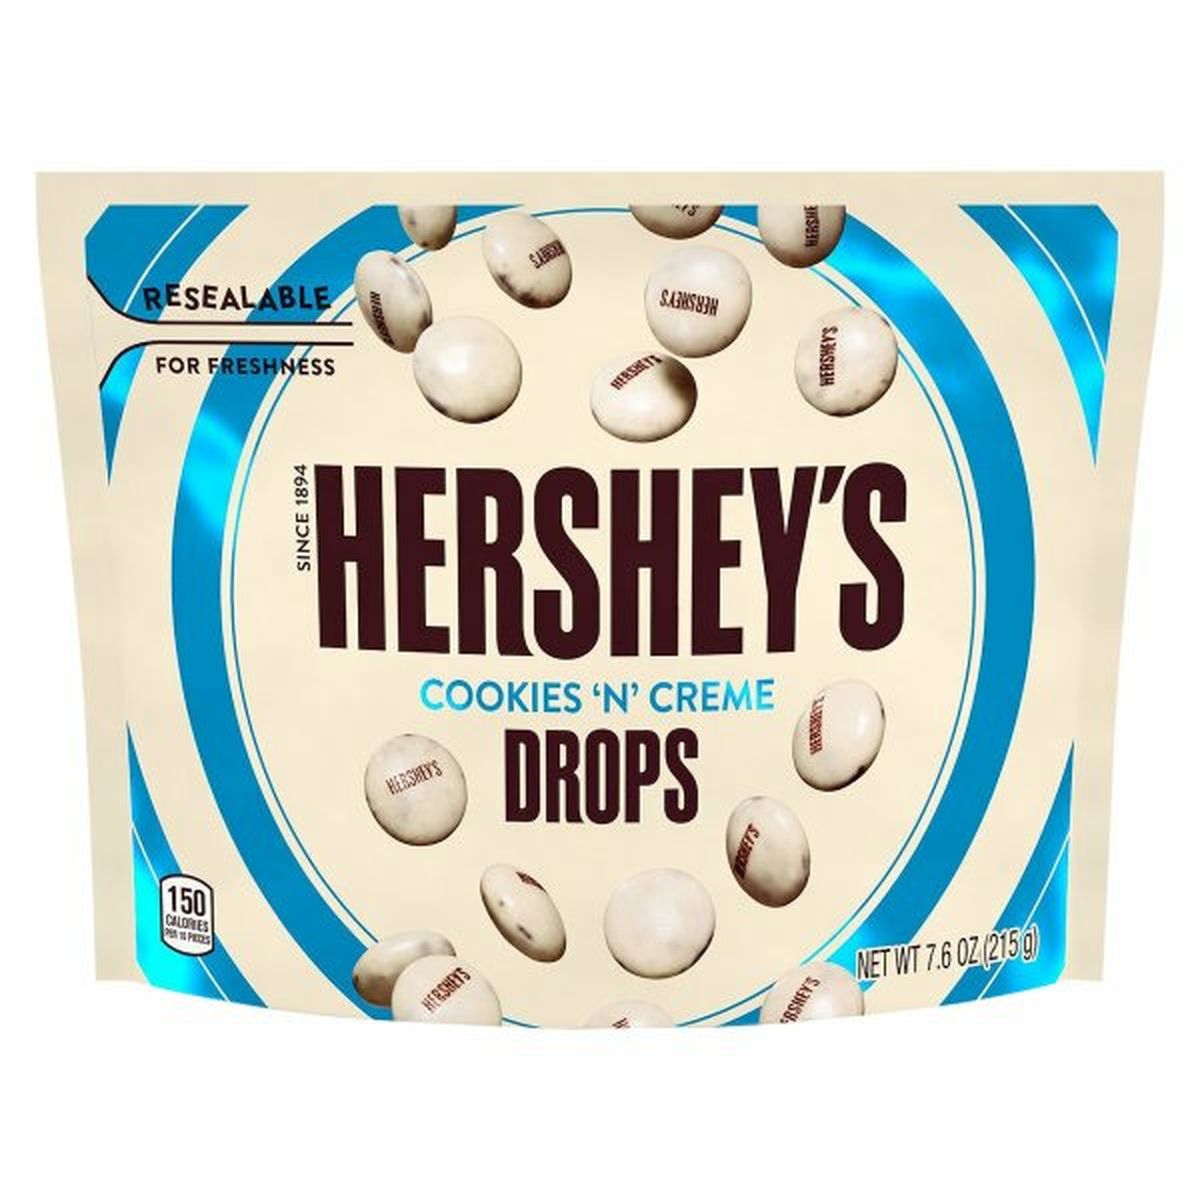 Calories in Hershey's Drops, Cookies 'N' Creme